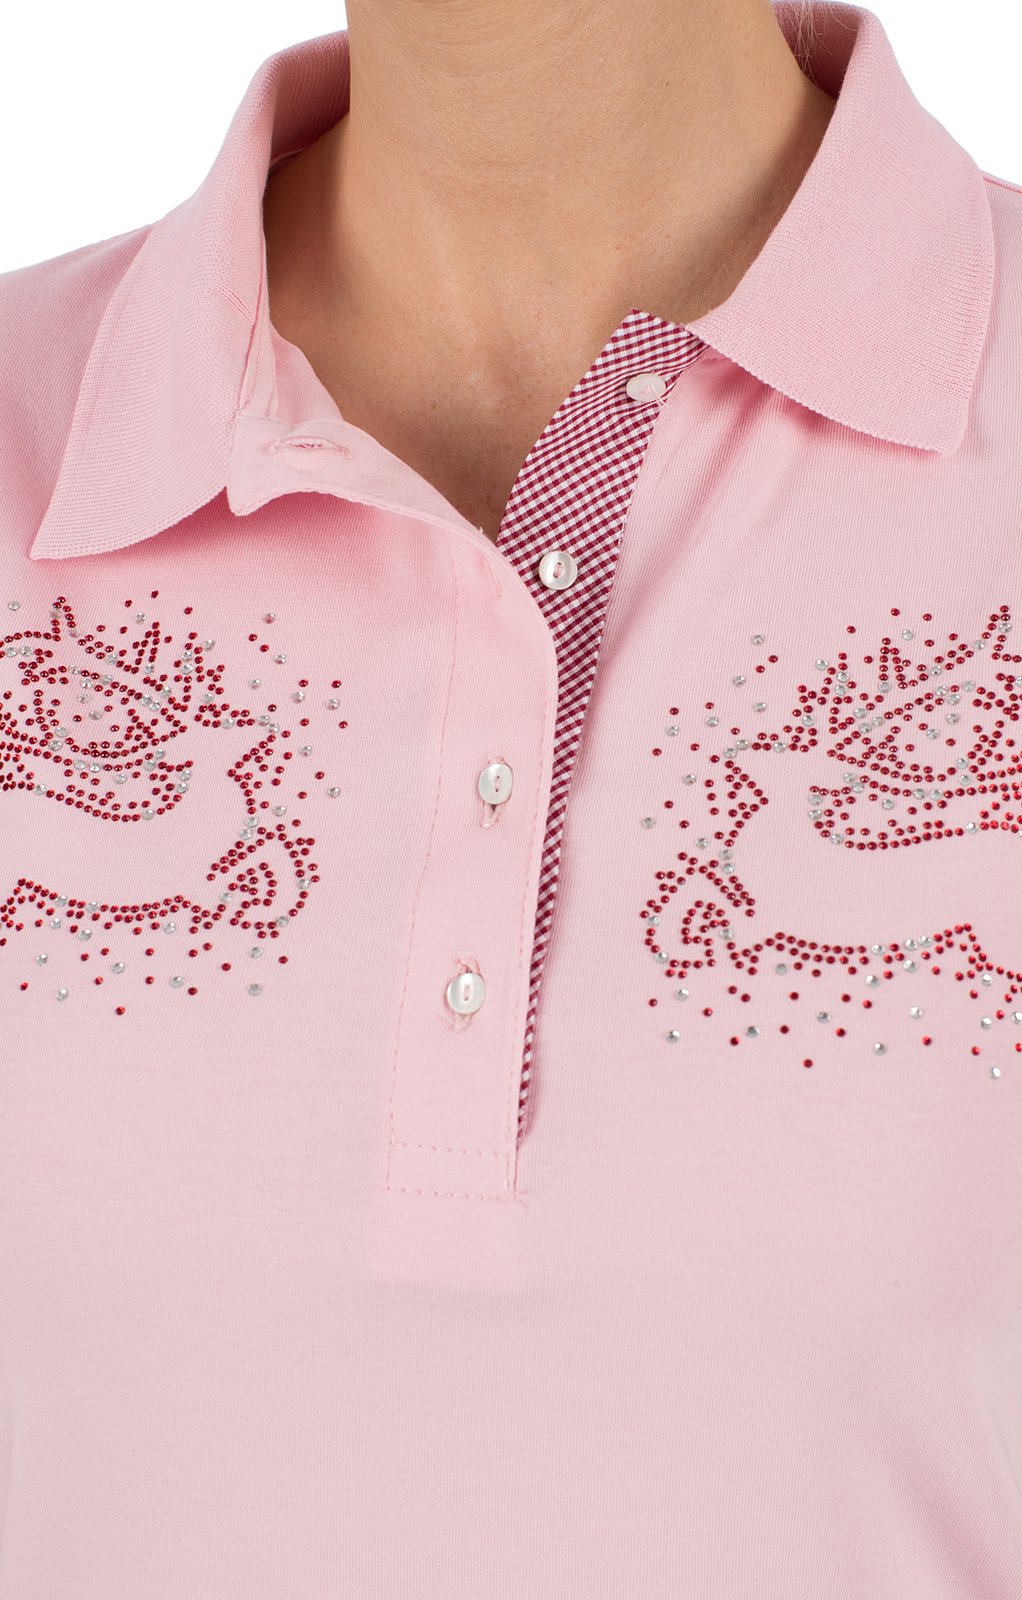 weitere Bilder von Trachten Shirt BRITTA pink